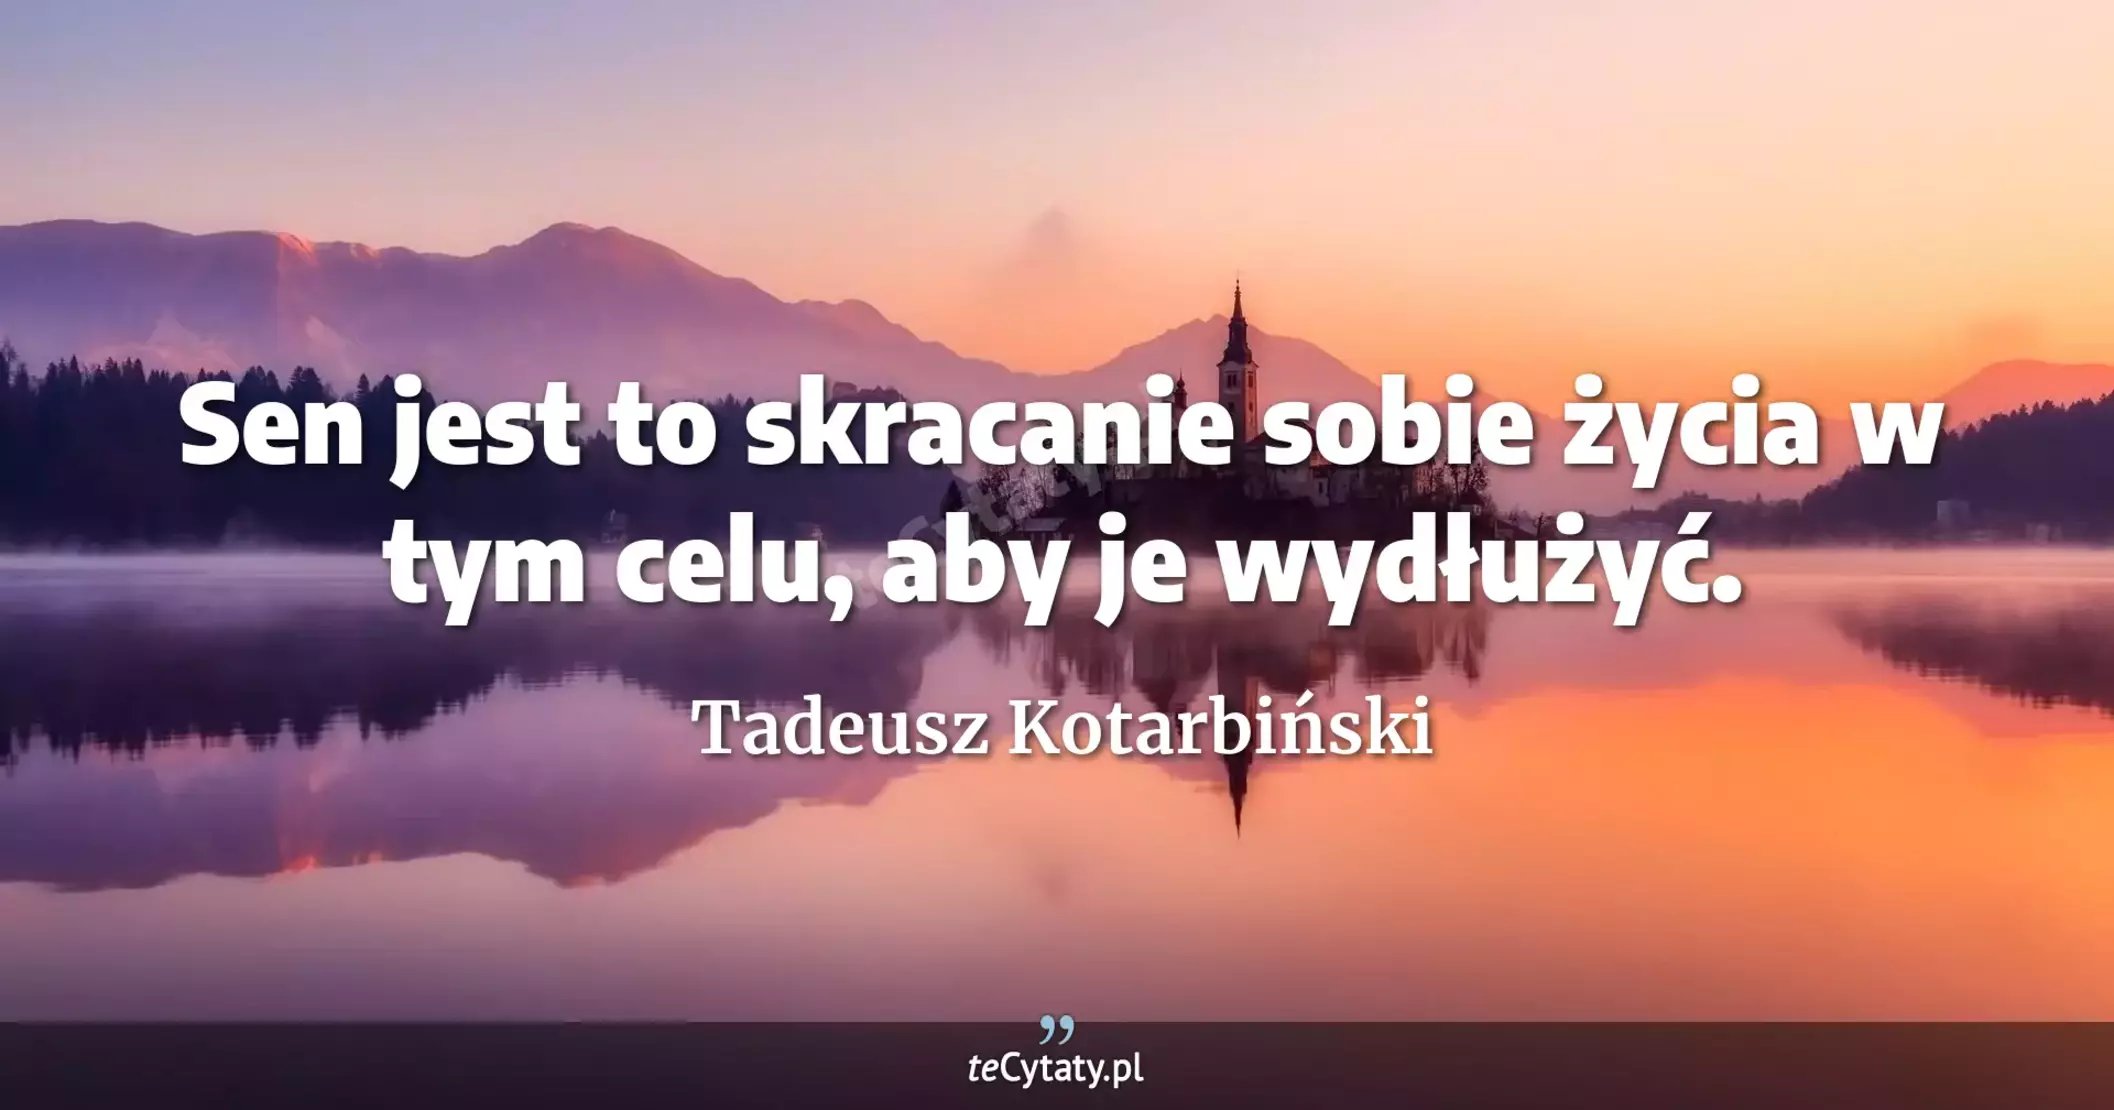 Sen jest to skracanie sobie życia w tym celu, aby je wydłużyć. - Tadeusz Kotarbiński